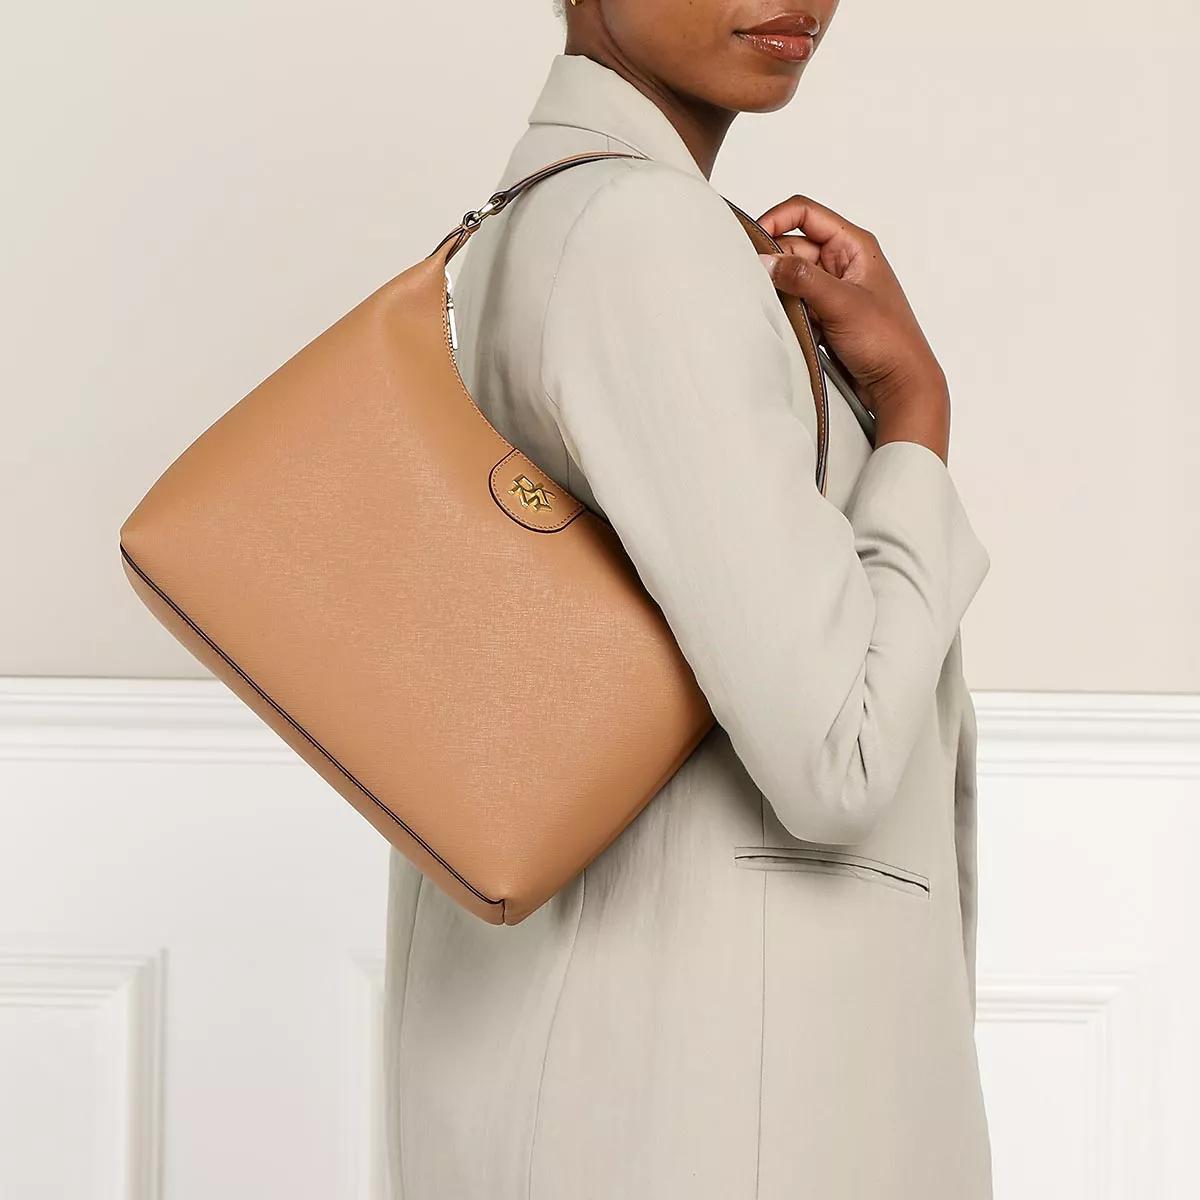 DKNY Large Carol Cashew Leather Pochette Bag - ShopStyle